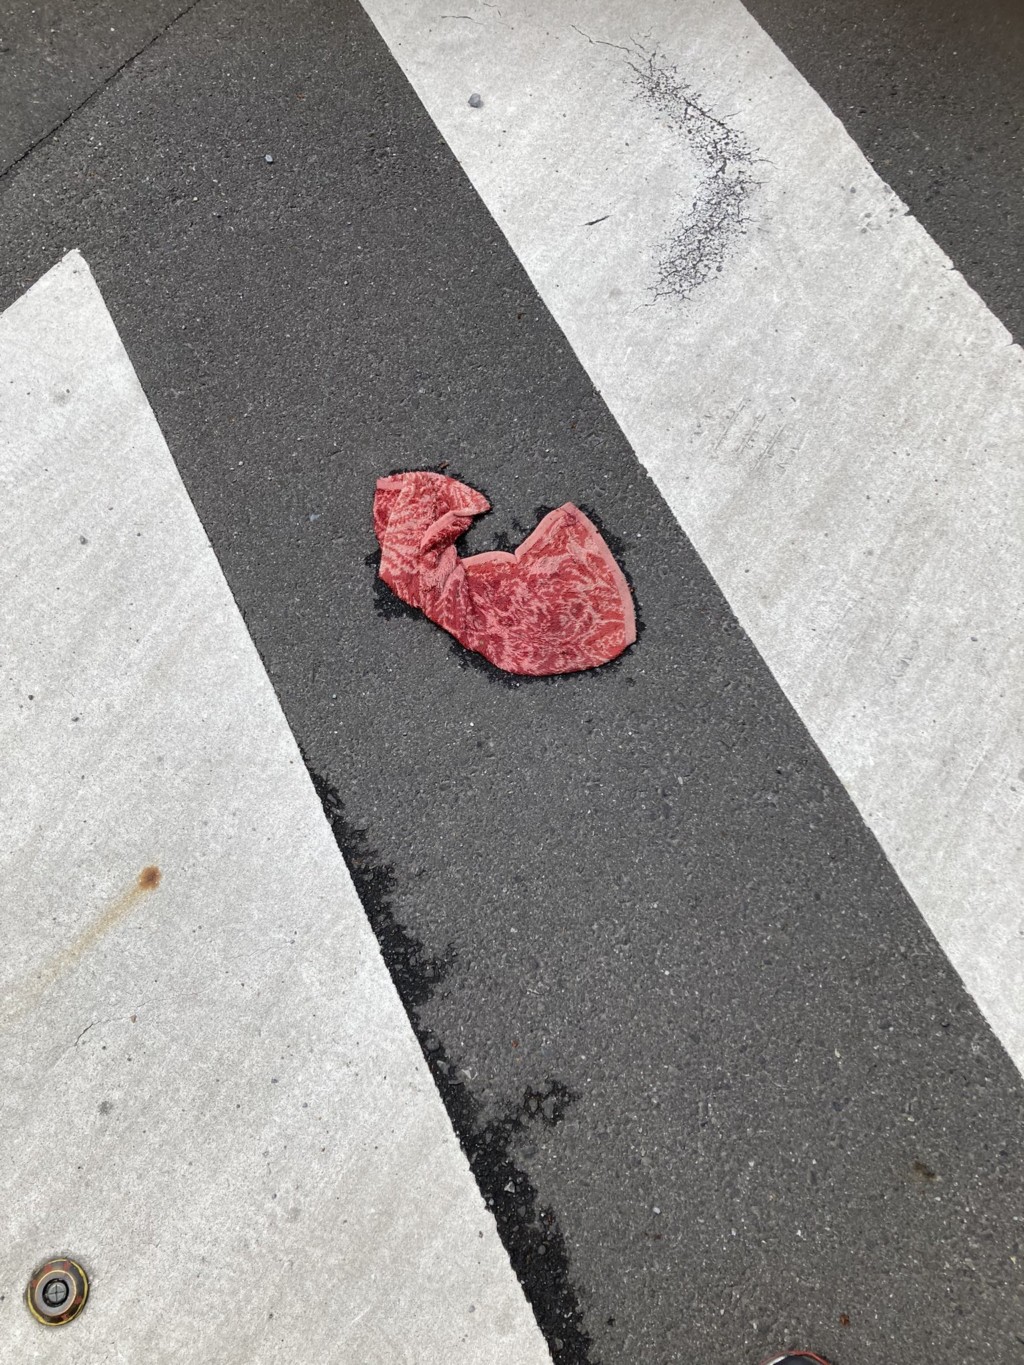 過馬路，驚見松阪牛肉片掉地上，原來 ... AI 都笑了